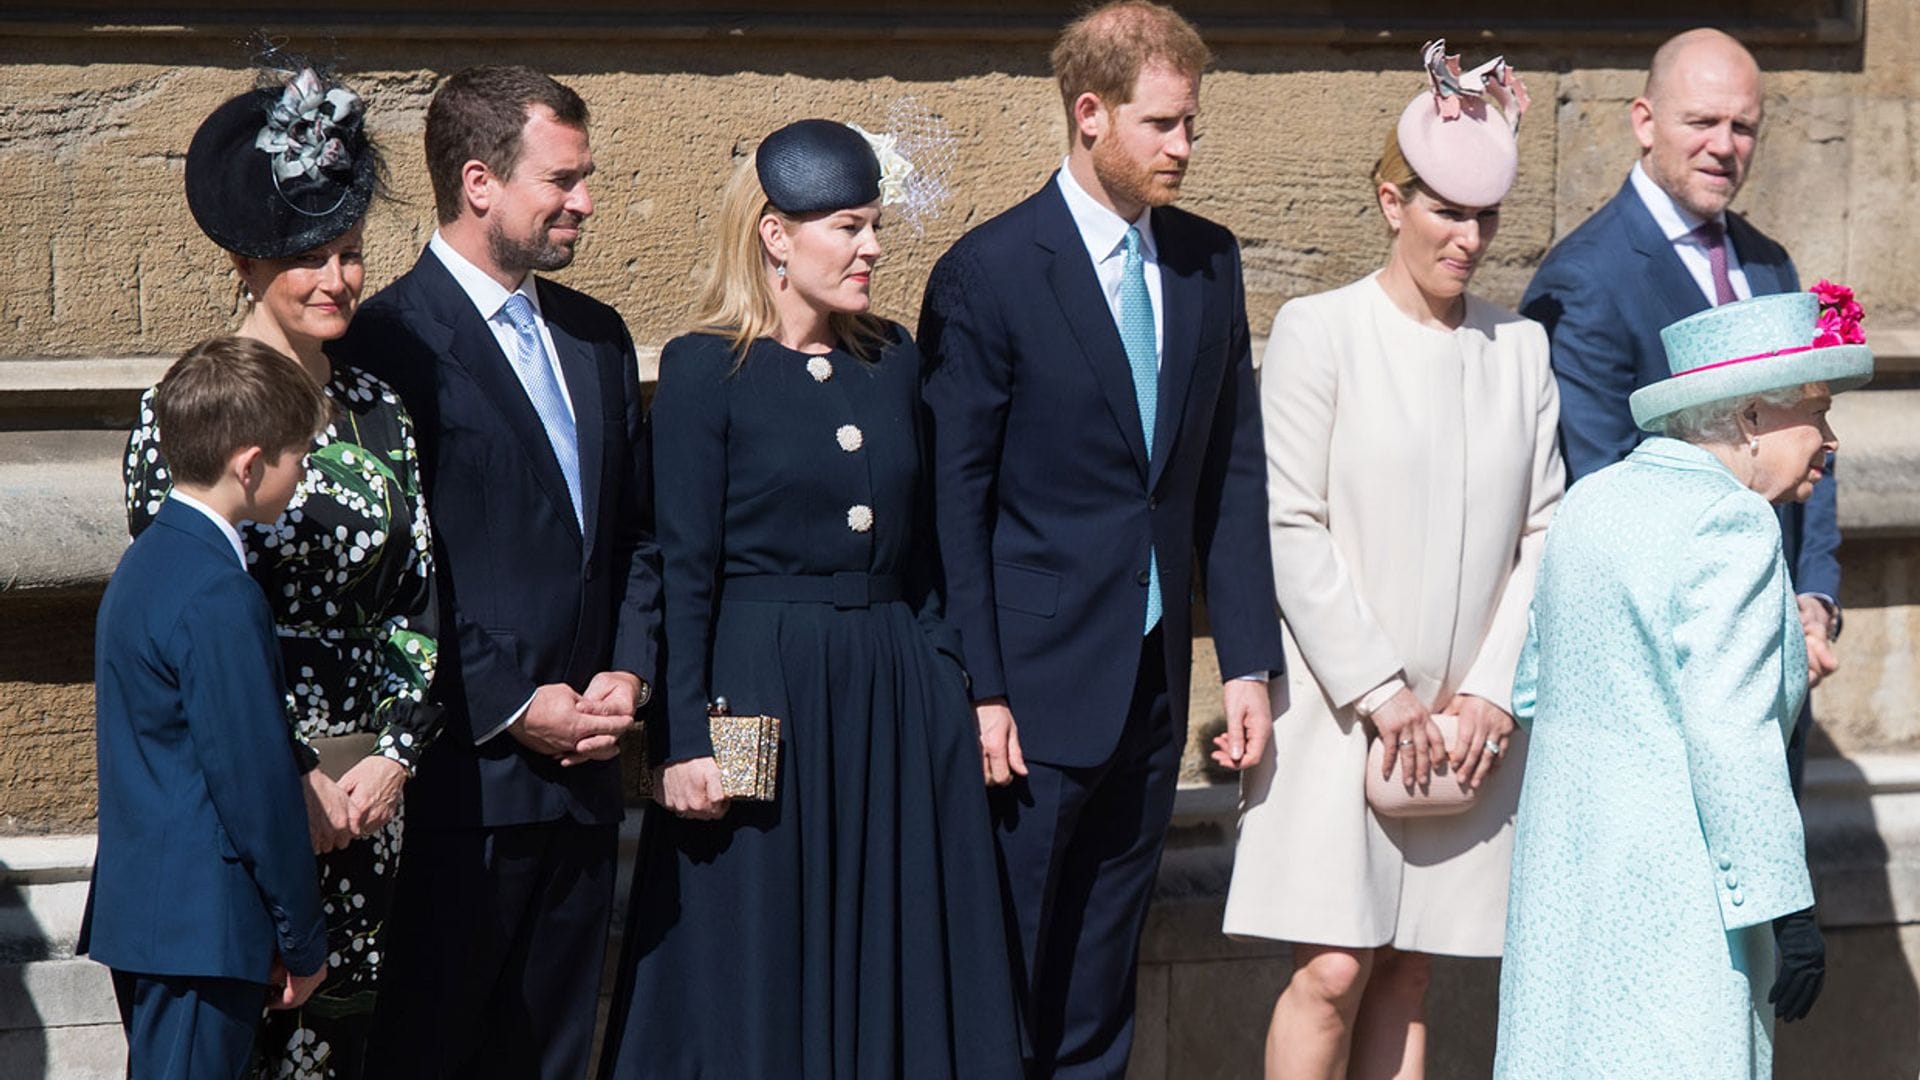 No solo Archie: estos son los miembros de la Familia Real que no tienen título de Príncipe